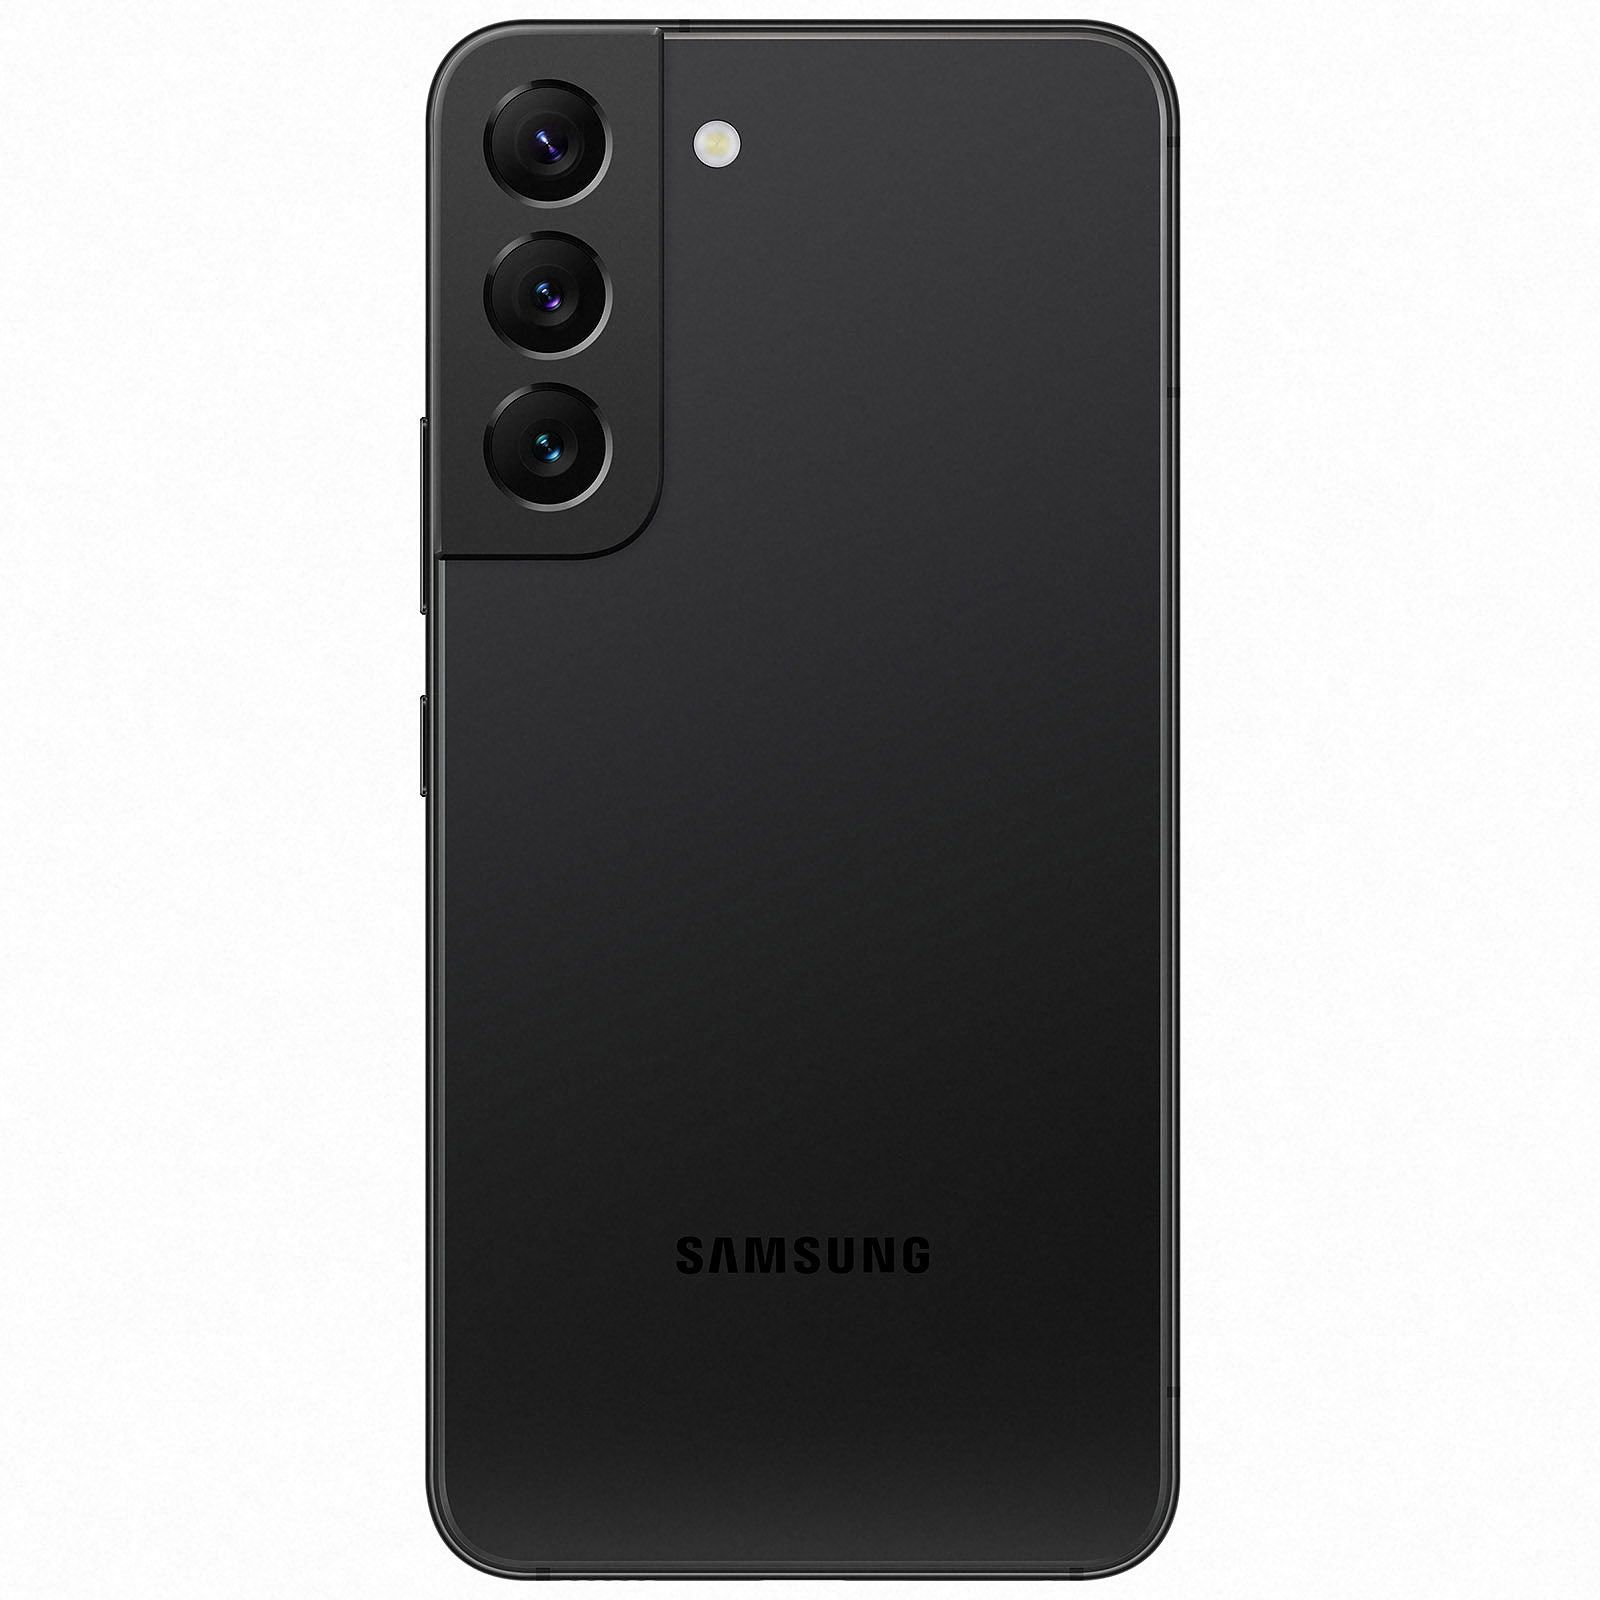 SAMSUNG REFURBISHED Galaxy (*) S22 GB 128 128 Dual schwarz sim) GB (dual SIM